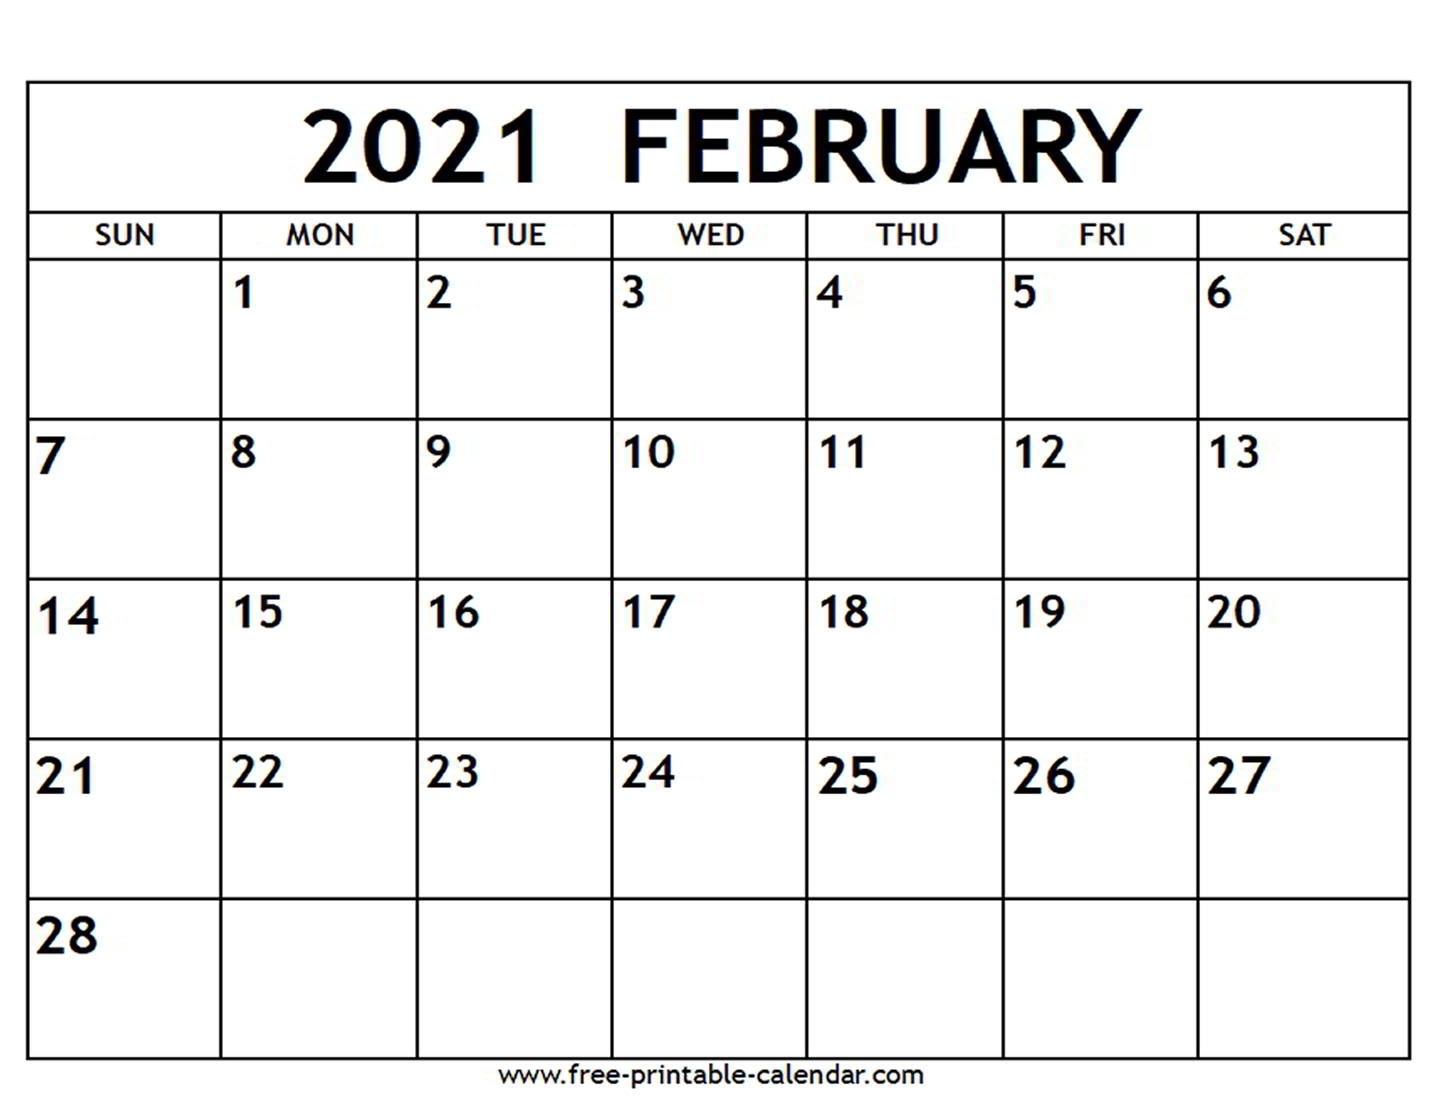 February 2021 Calendar - Free-Printable-Calendar 2021 Calendar Free Printable